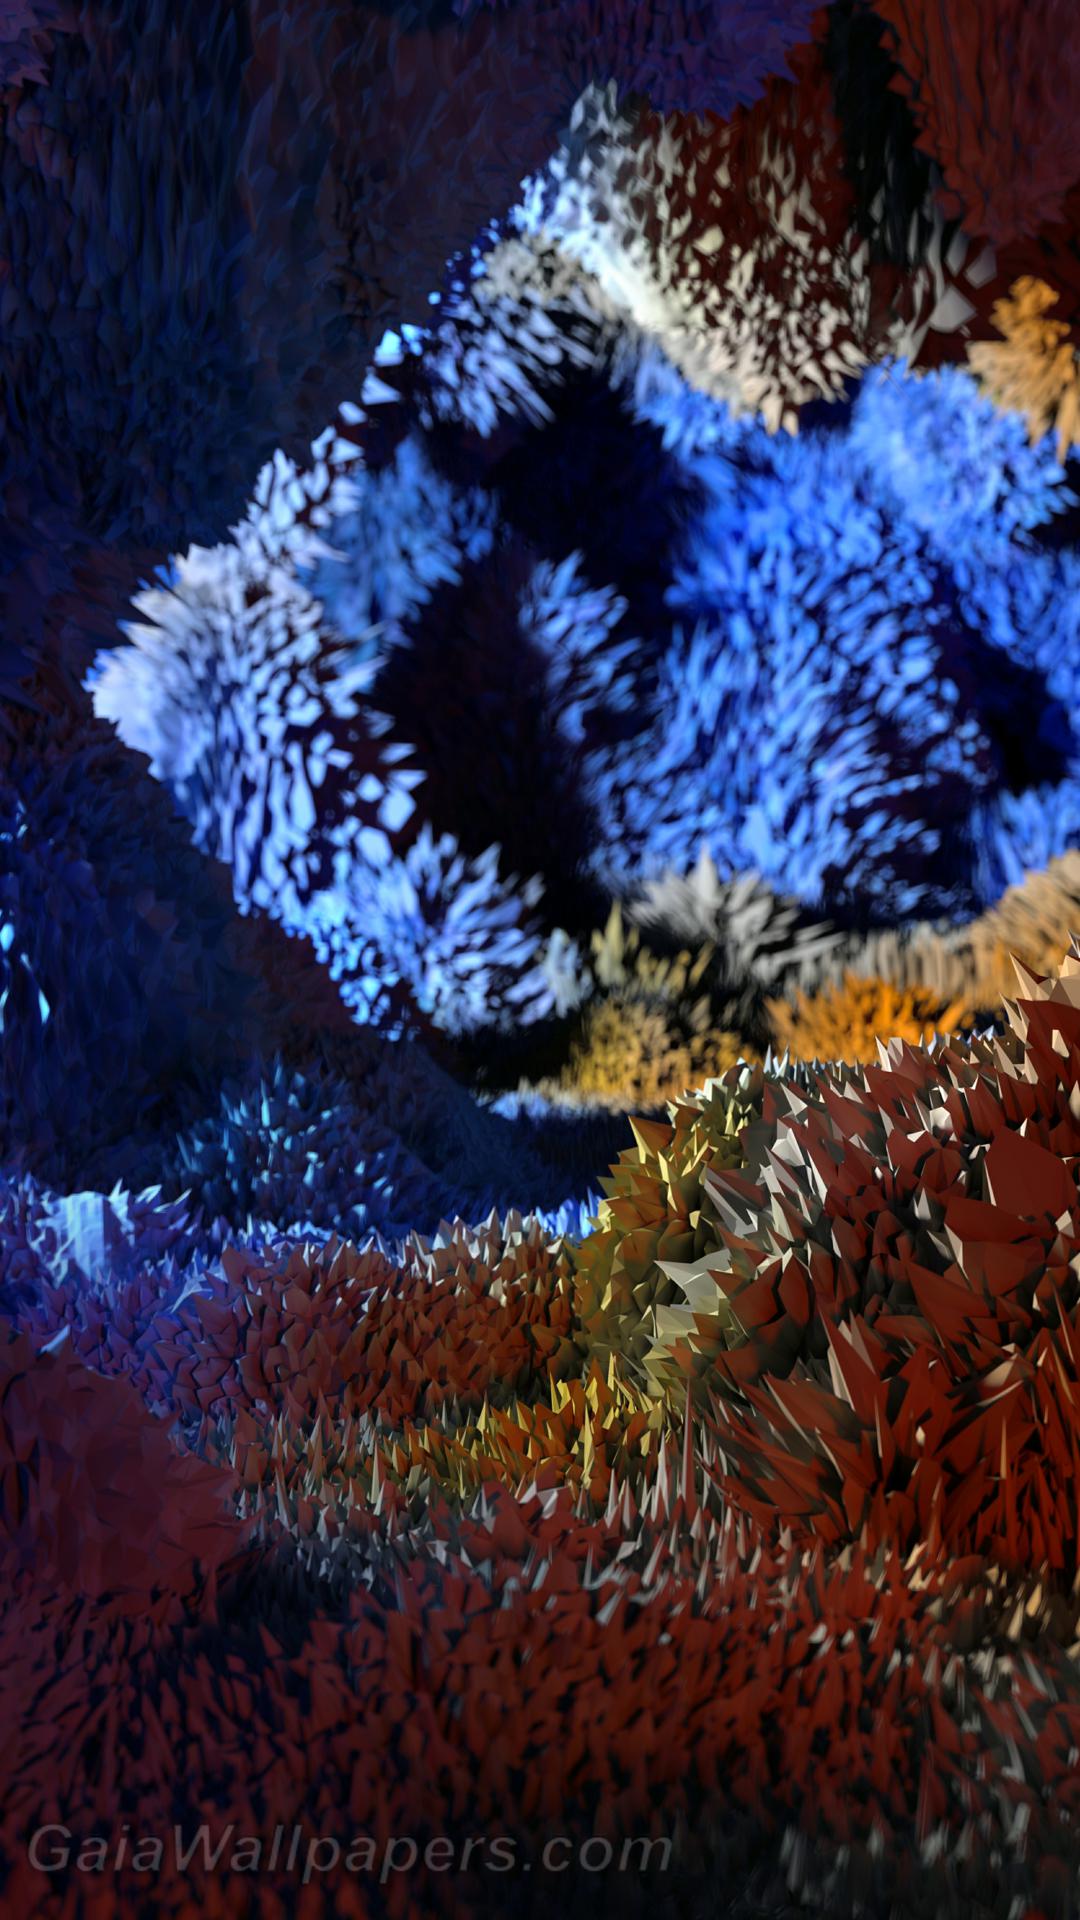 Grotte avec des cristaux incroyables hérissés - Fonds d'écran gratuits